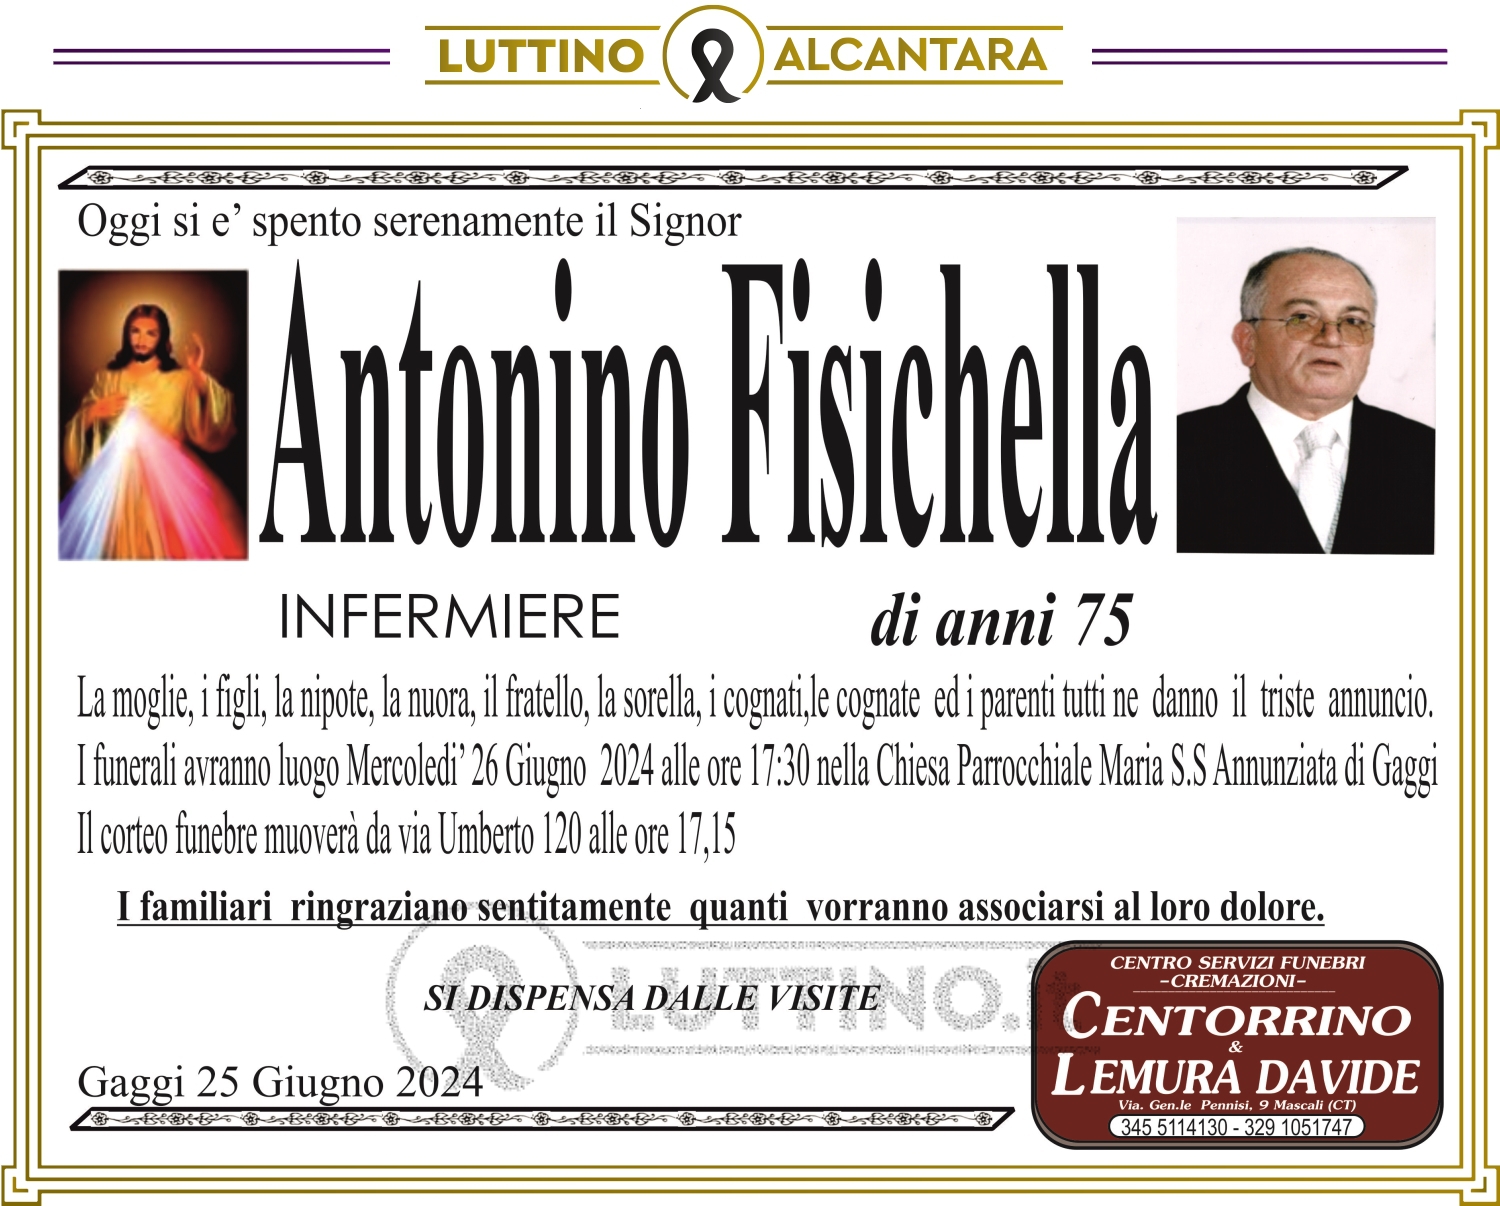 Antonino Fisichella